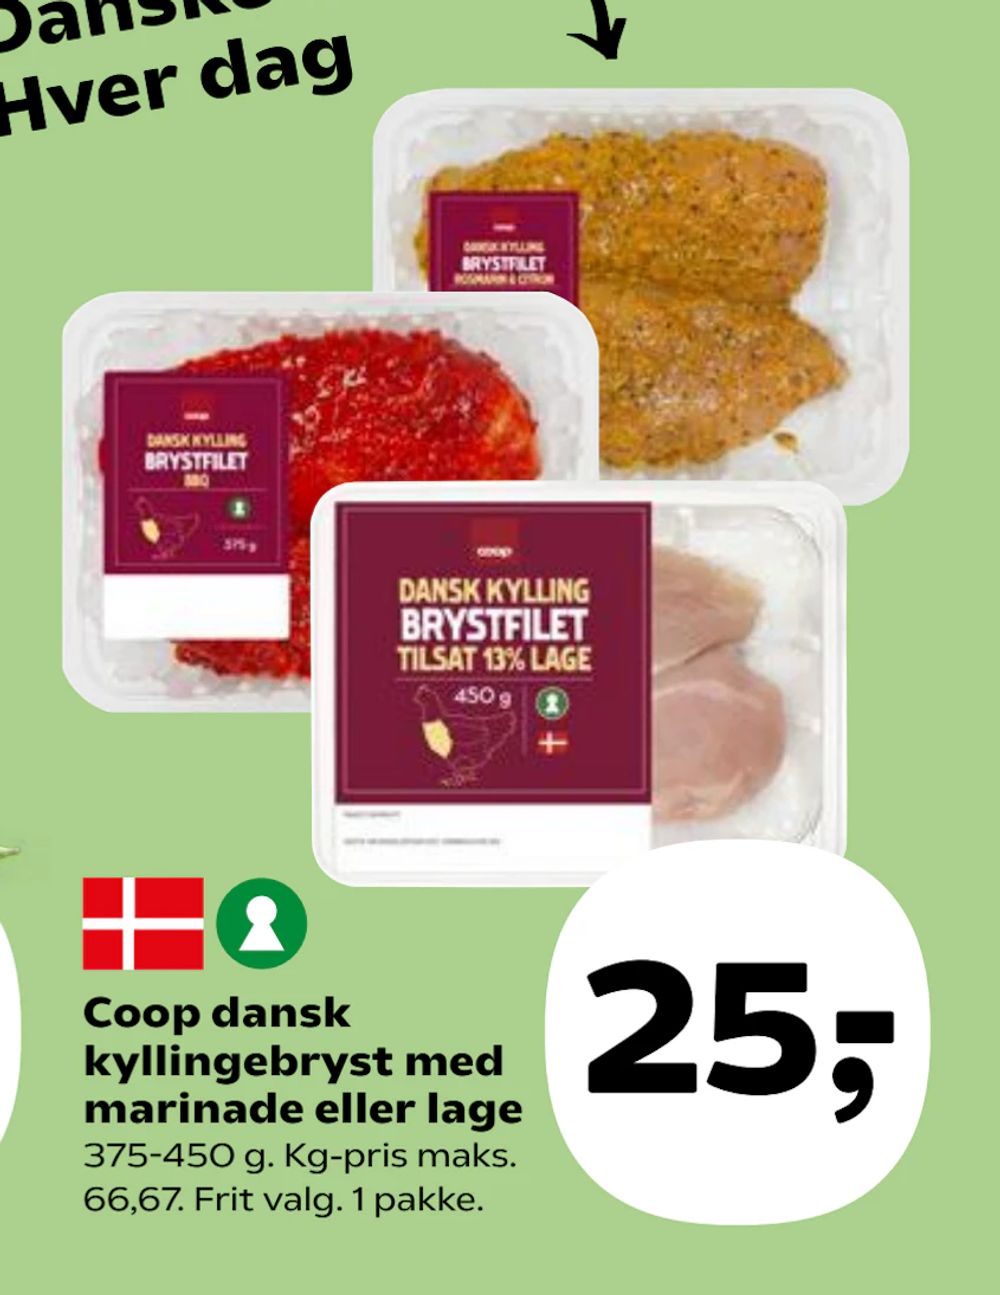 Tilbud på Coop dansk kyllingebryst med marinade eller lage fra SuperBrugsen til 25 kr.